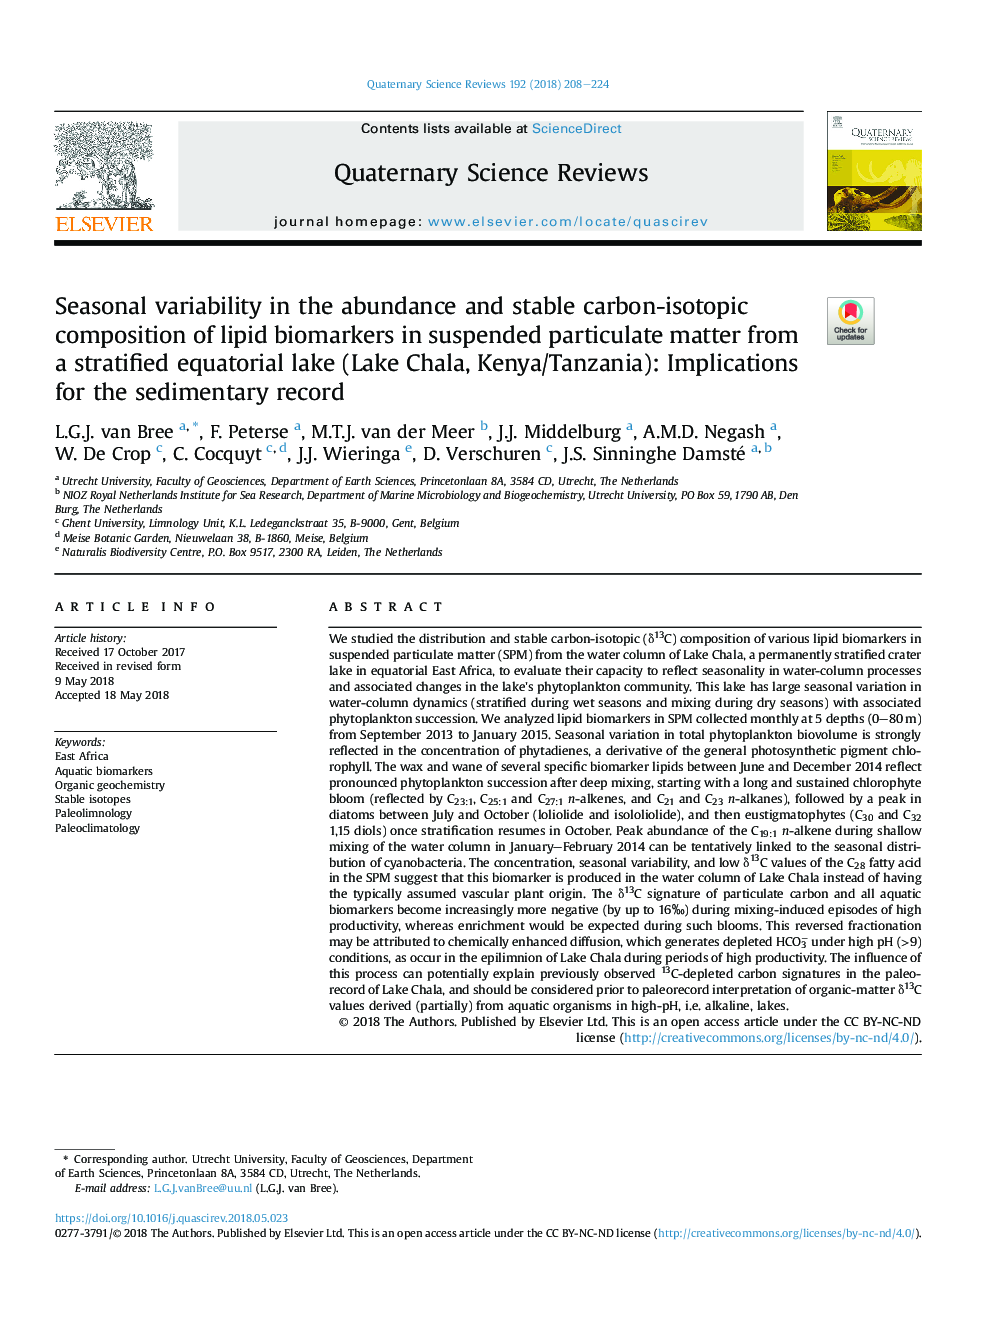 تنوع فصلی در فراوانی و ترکیب پایدار کربن-ایزوتوپ بیومارکرهای لیپیدی در ذرات معلق از یک دریاچه استوایی طبقه بندی شده (دریاچه چالا، کنیا / تانزانیا): پیامدهای رکورد رسوب